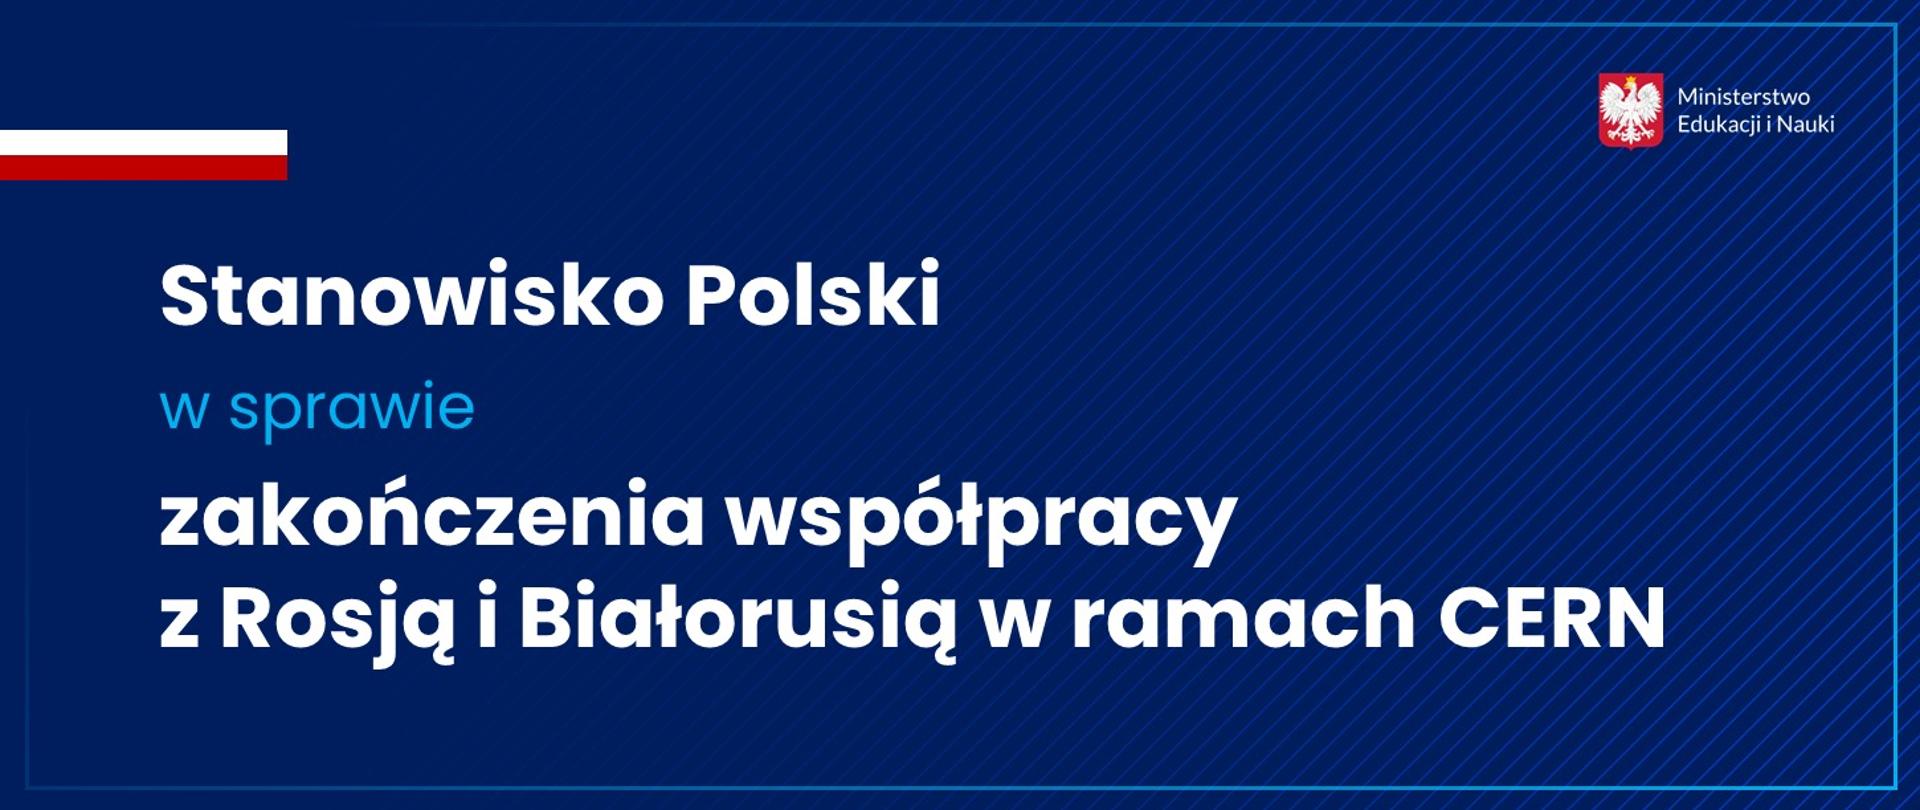 Stanowisko Polski w sprawie zakończenia współpracy z Rosją i Białorusią w ramach CERN 